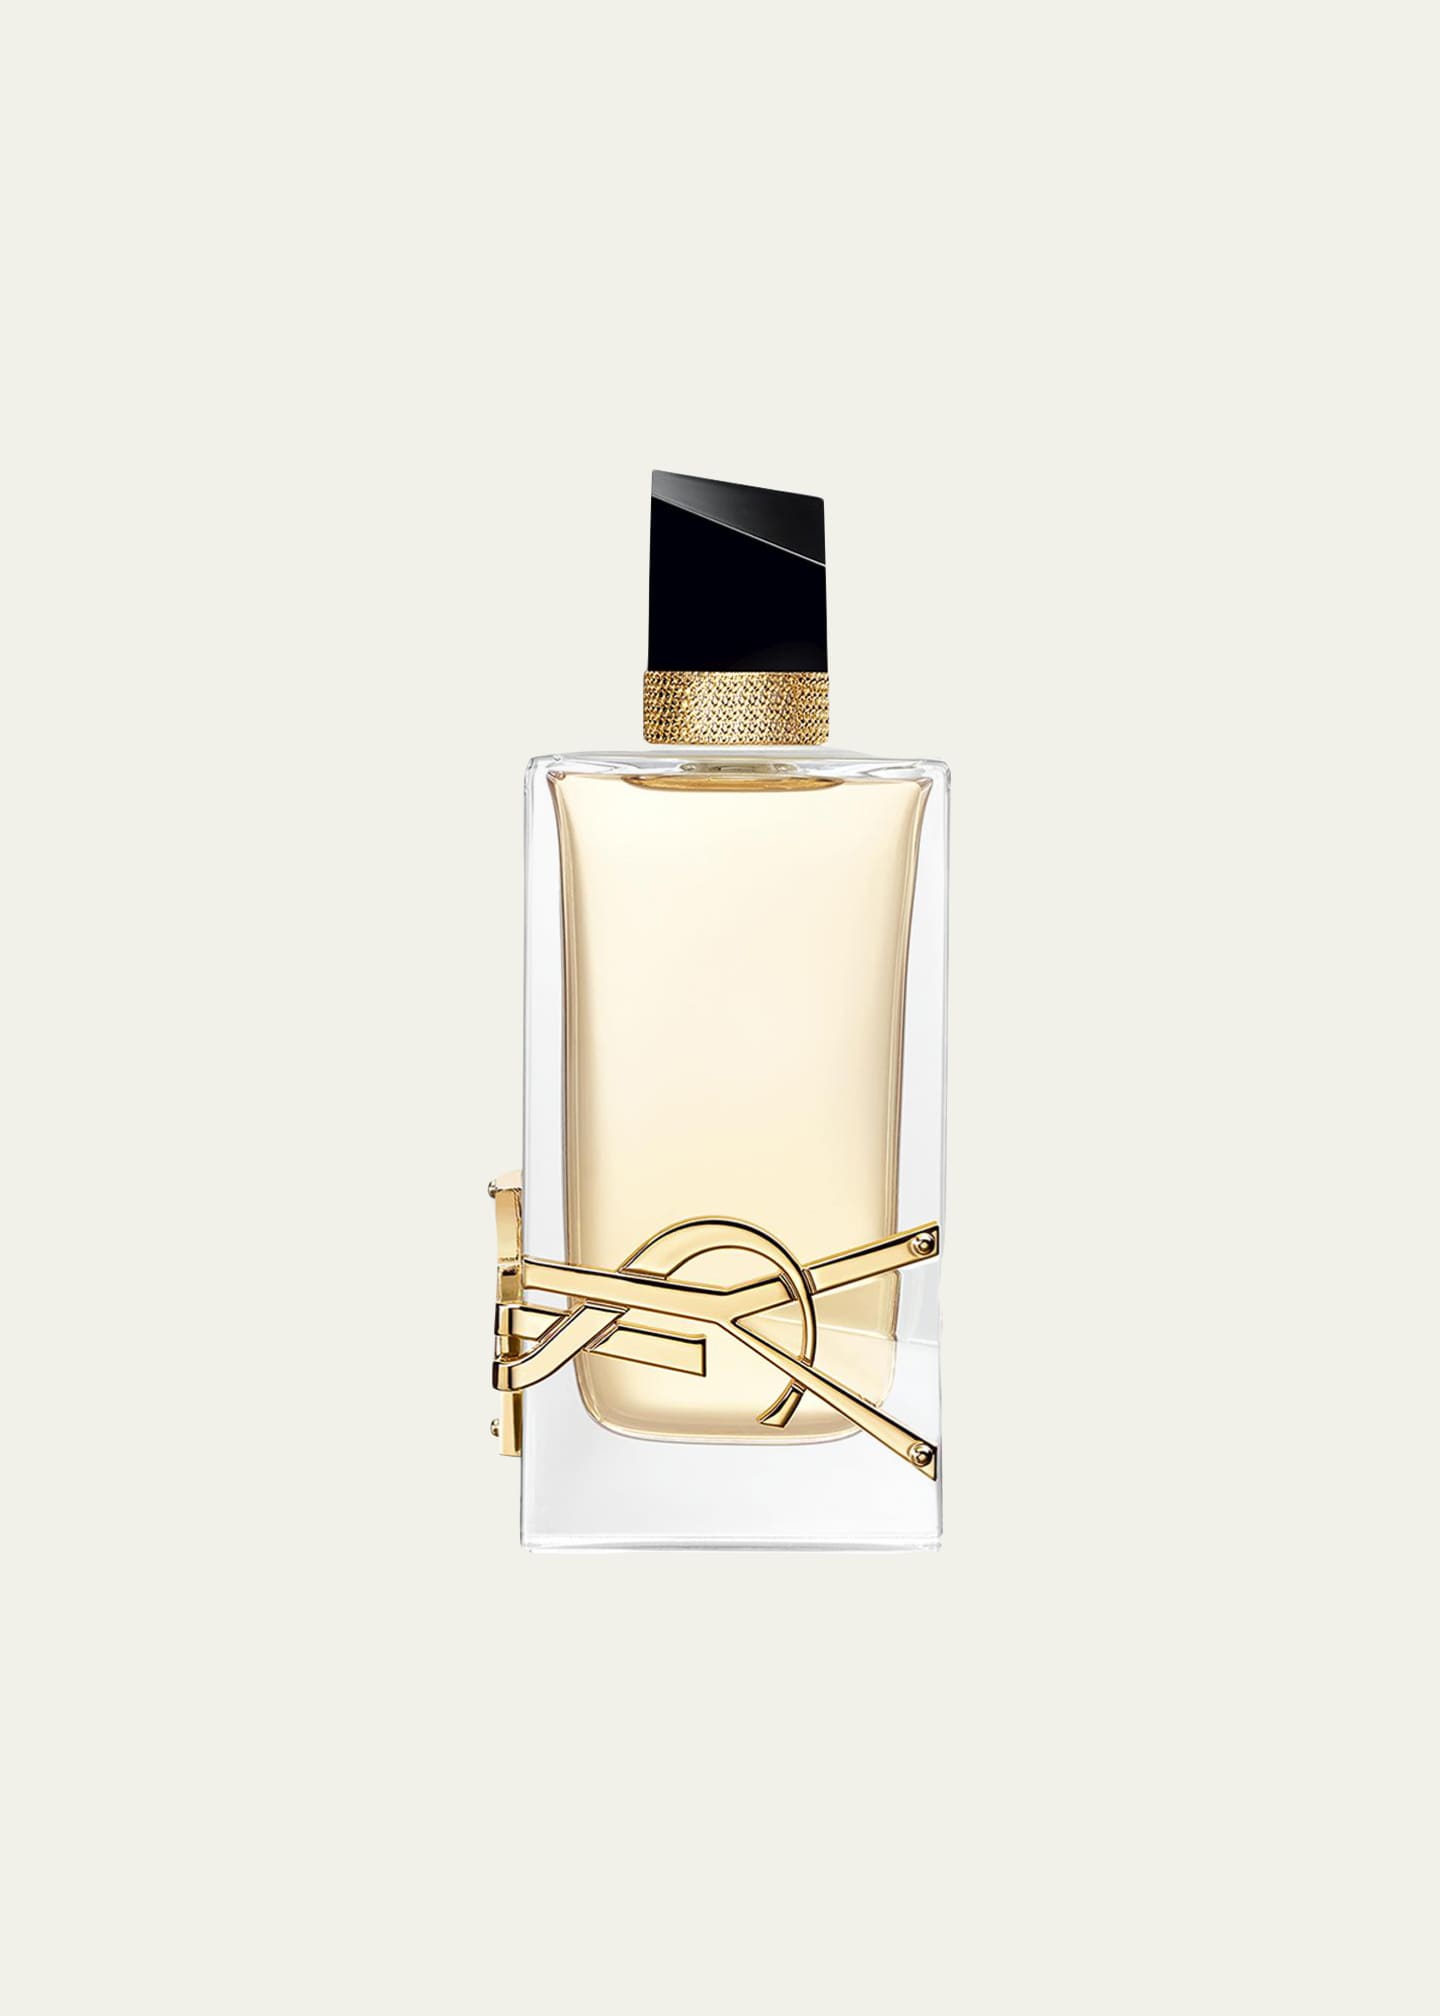 Yves Saint Laurent Beaute Libre Eau de Parfum Image 1 of 5